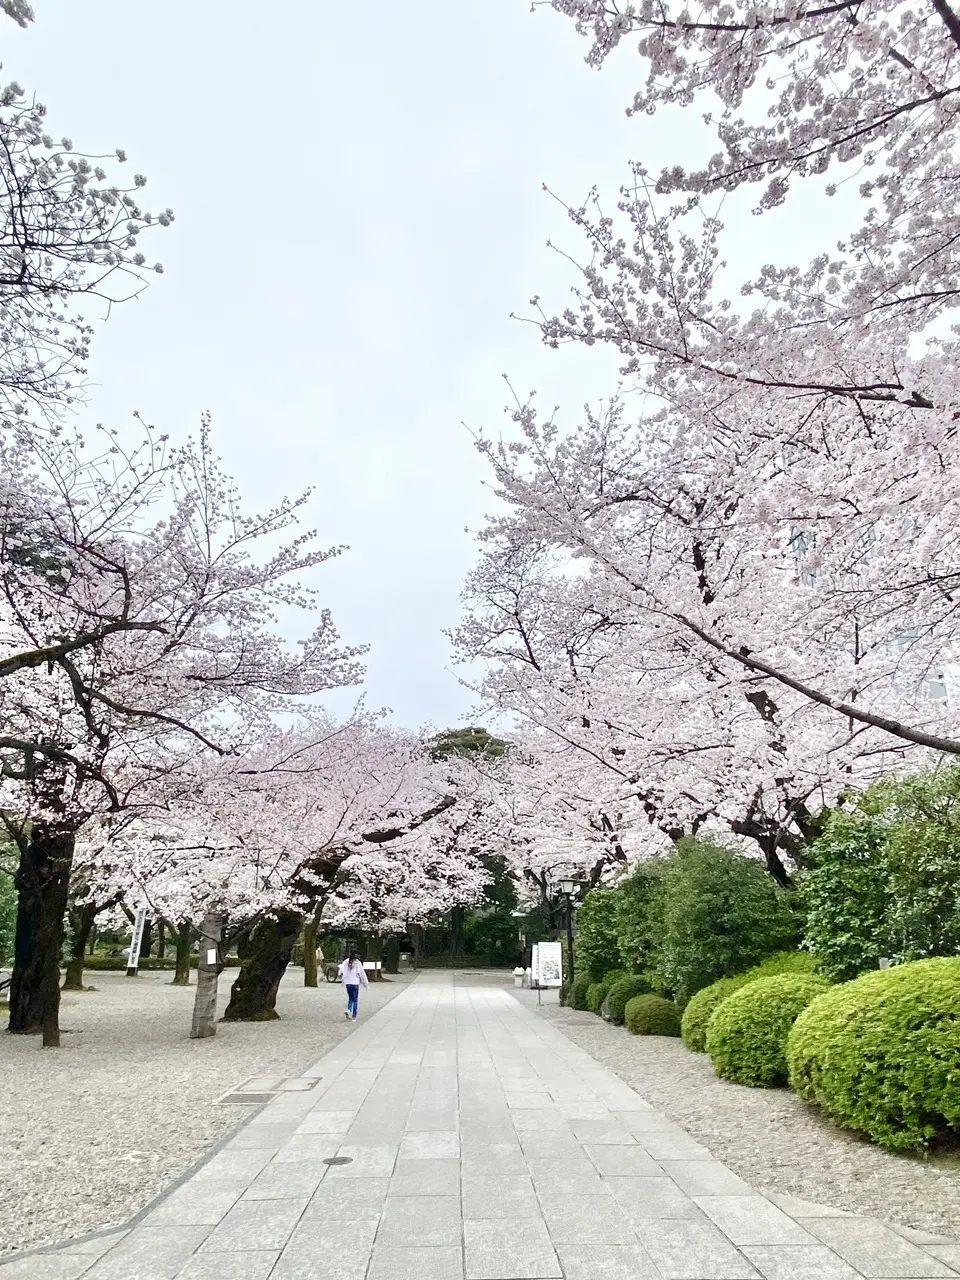 靖国神社 遊就館前の桜